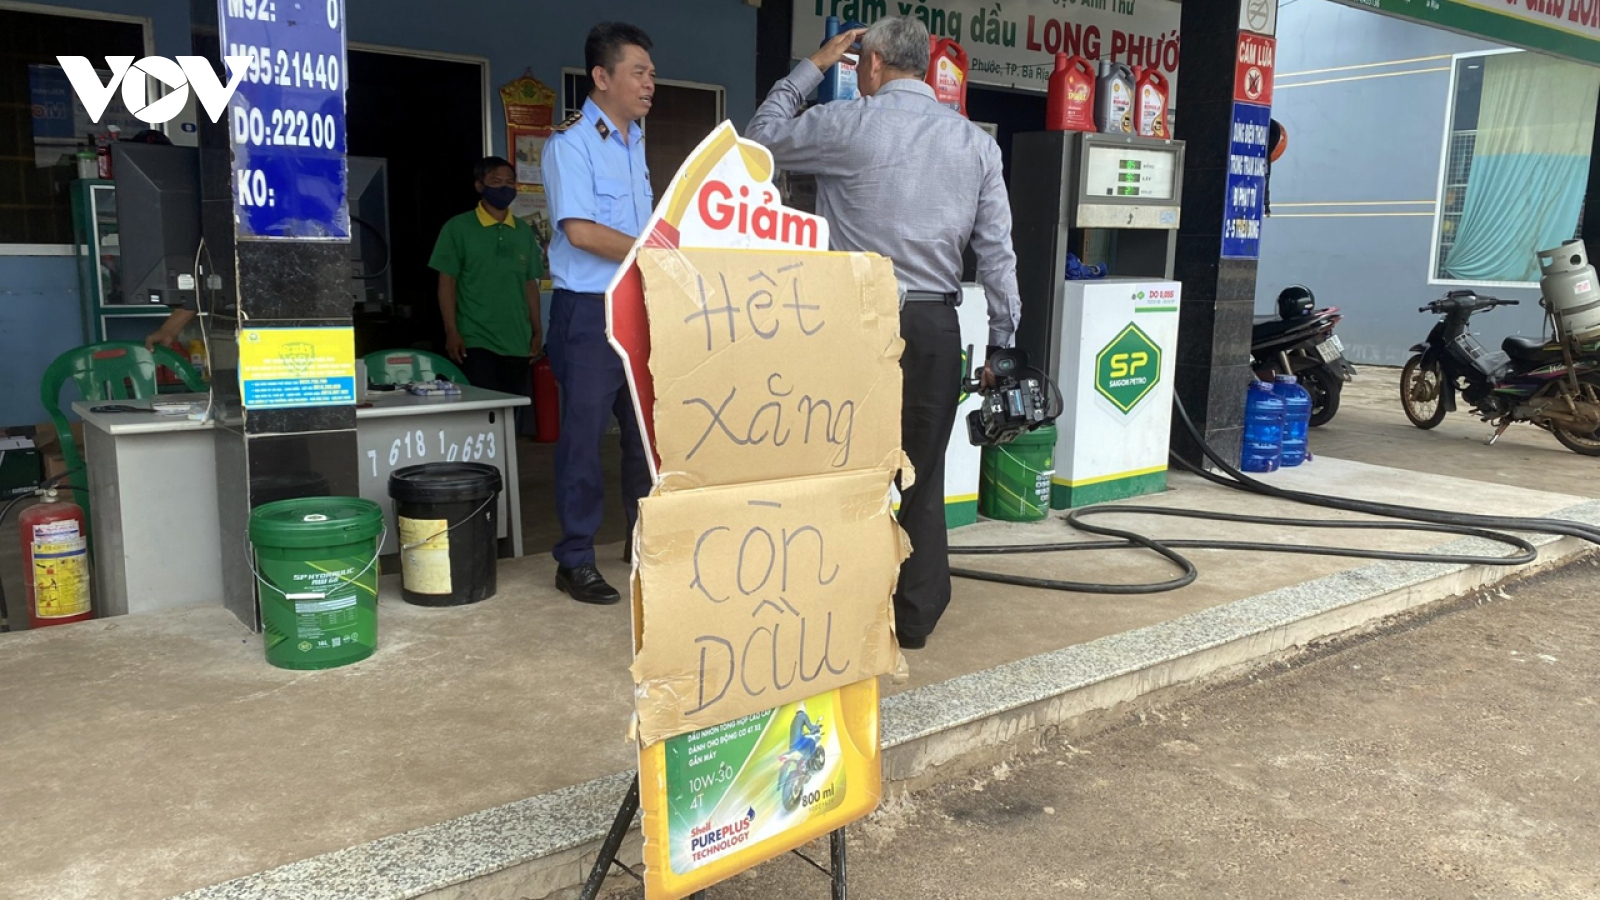 Kiểm tra các cửa hàng xăng dầu ở Bà Rịa-Vũng Tàu, Bình Phước treo bảng hết xăng